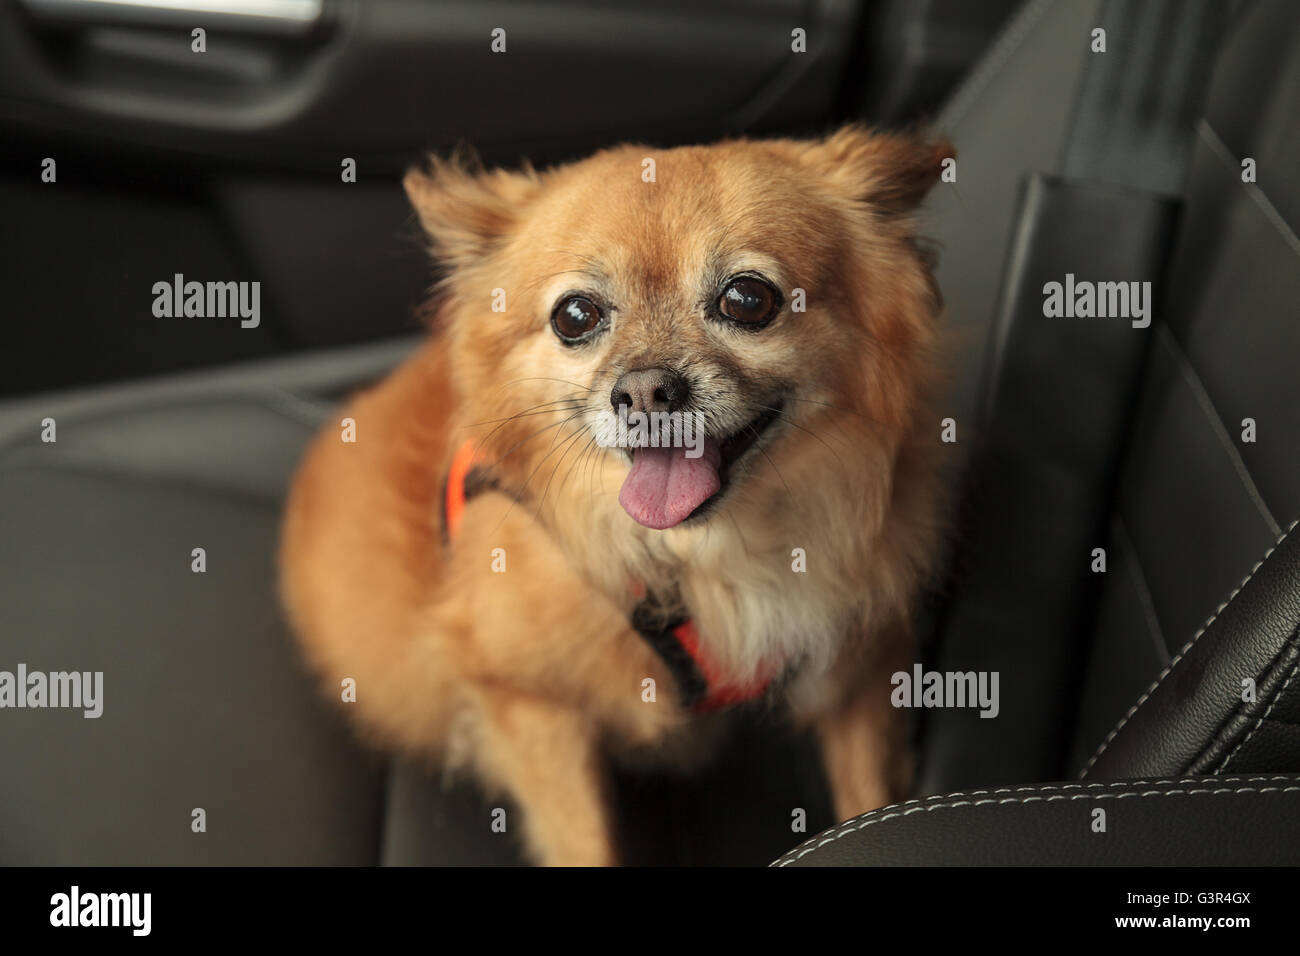 Pomerania e Chihuahua mix cane passa per un giro in auto. Egli è legato con un cavo che si attacca alla cintura per Foto Stock